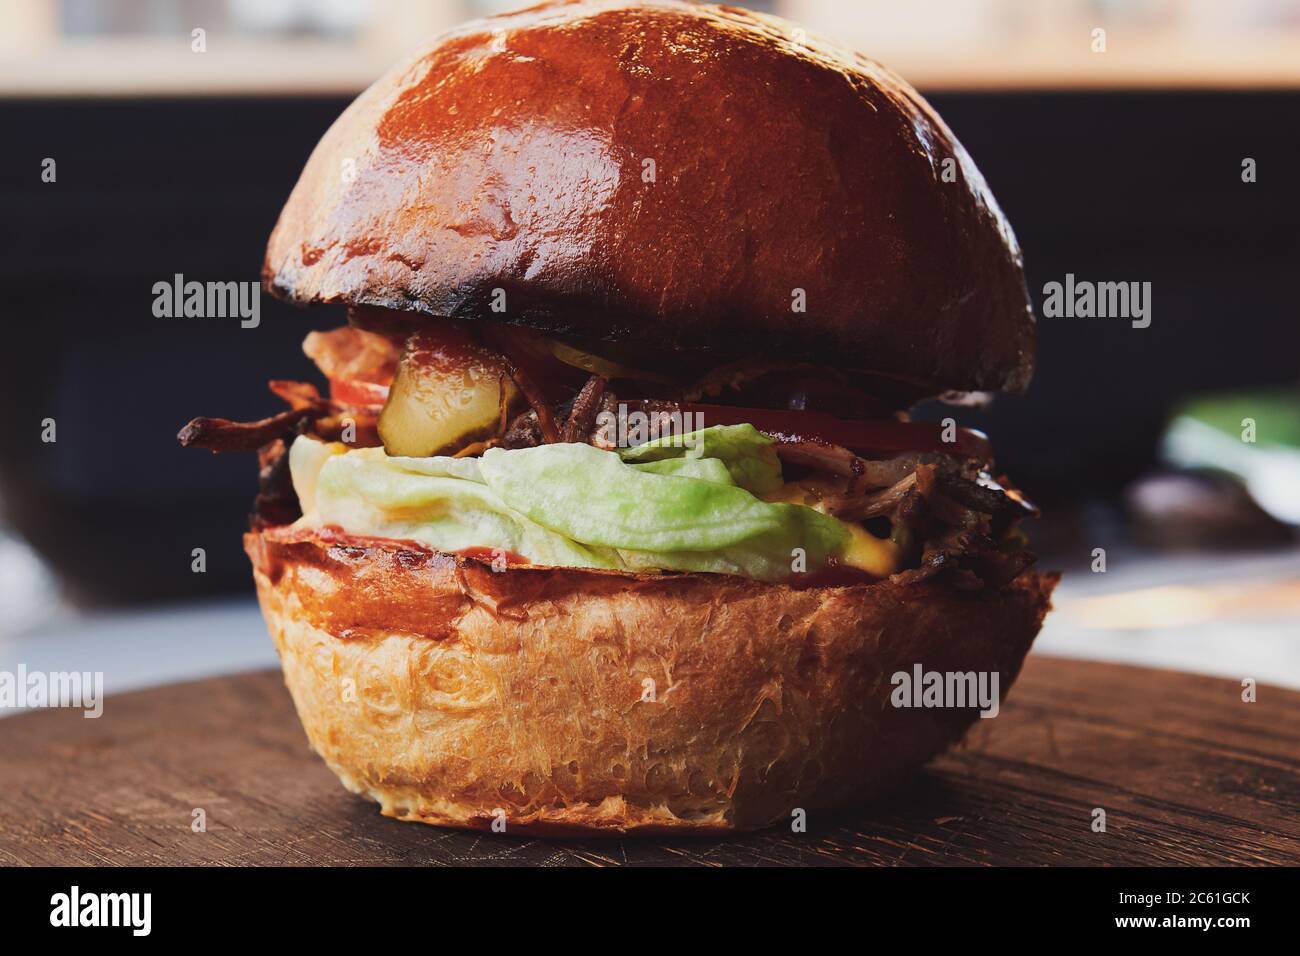 Burger mit Entenfleisch auf dem Holzbrett im Restaurant. Frisches Brötchen mit Salat und eingelegter Gurke. Nahaufnahme. Stockfoto